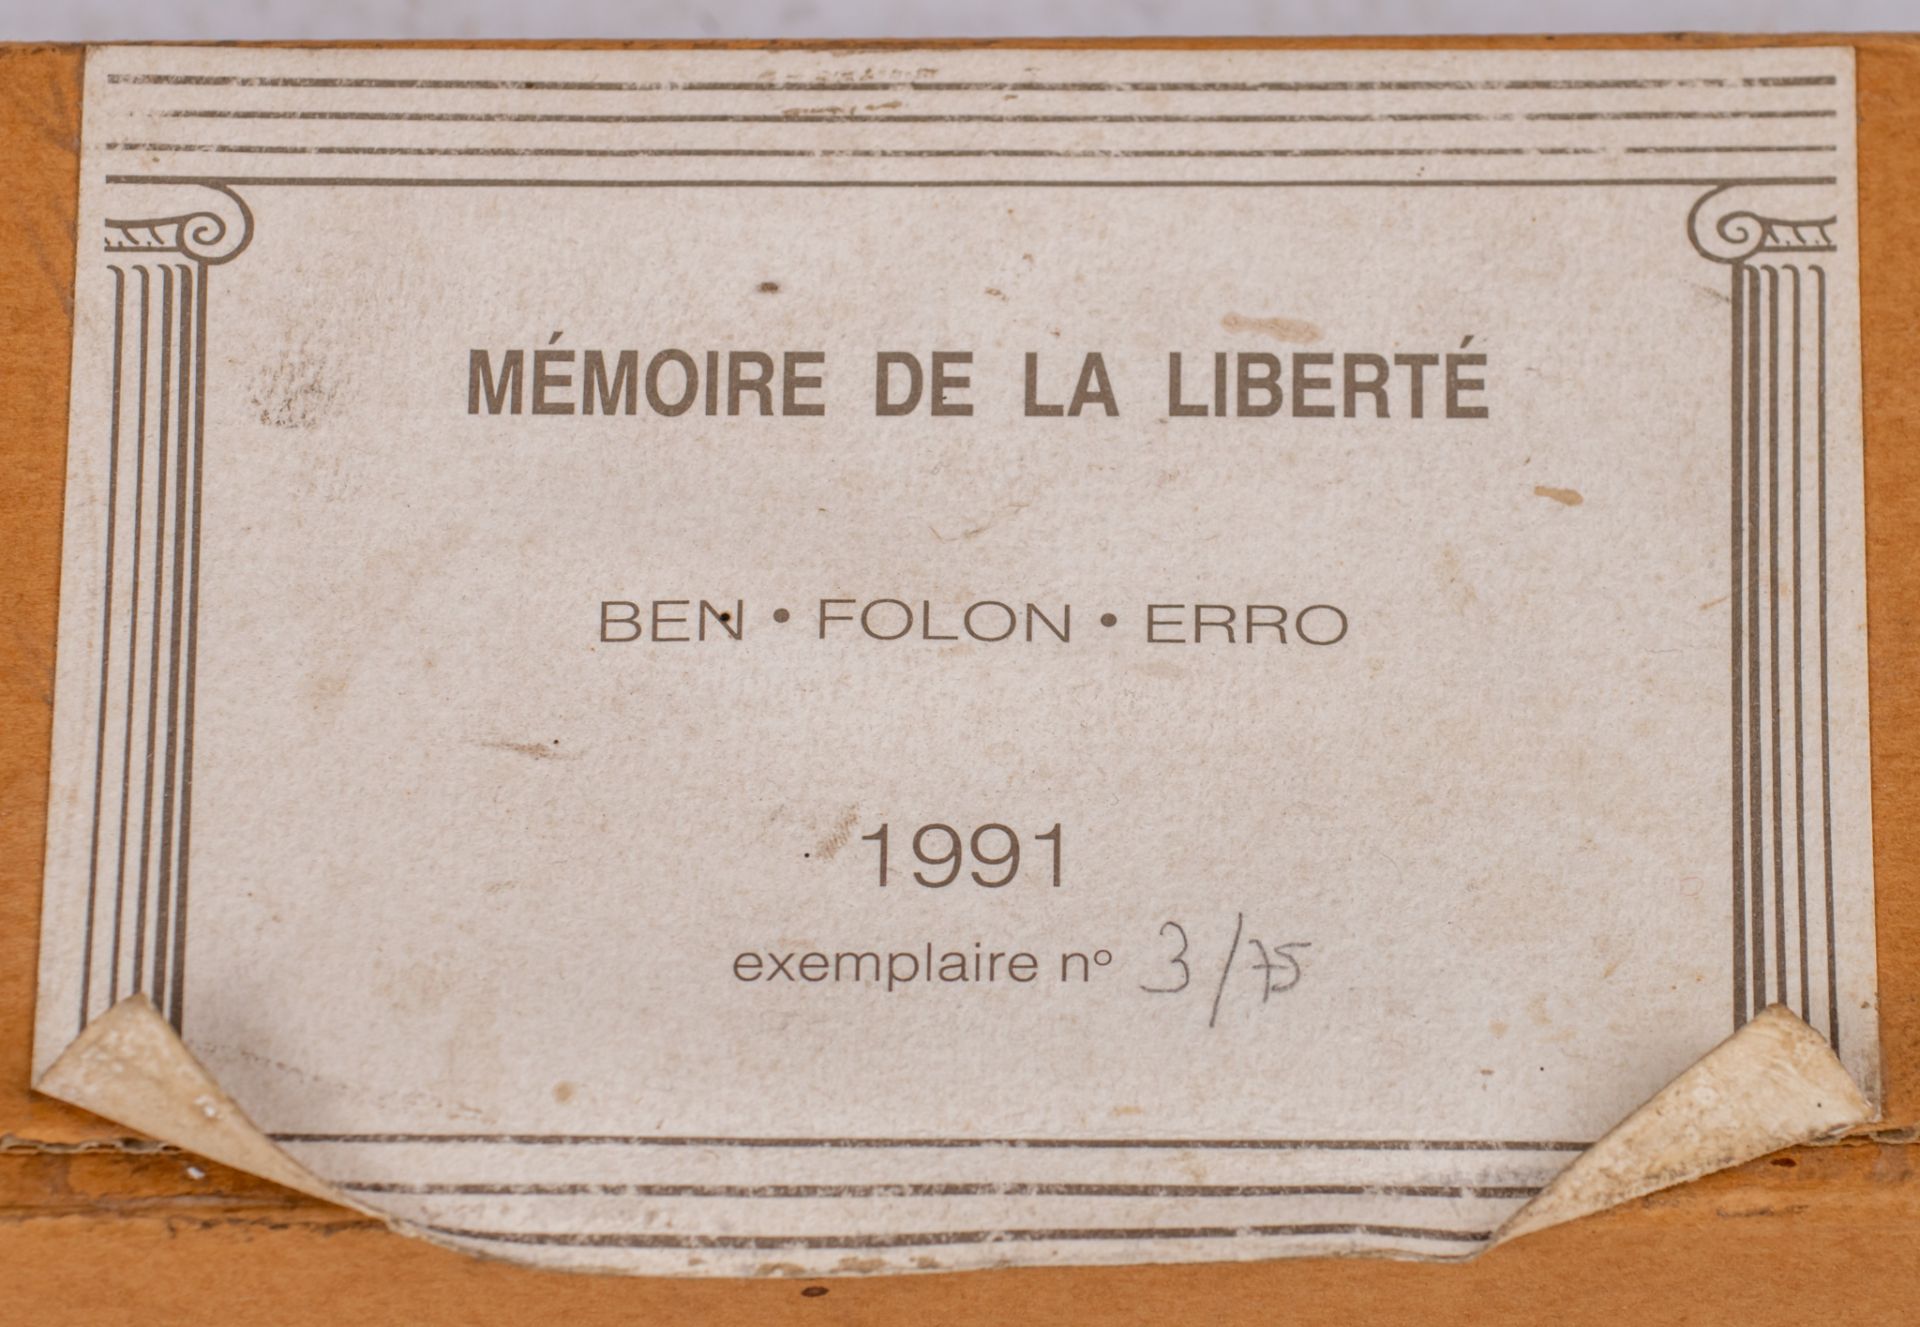 Ben - Folon - Erro, 'Memoire de la Liberte', 1991, No 3/75 - Image 14 of 14